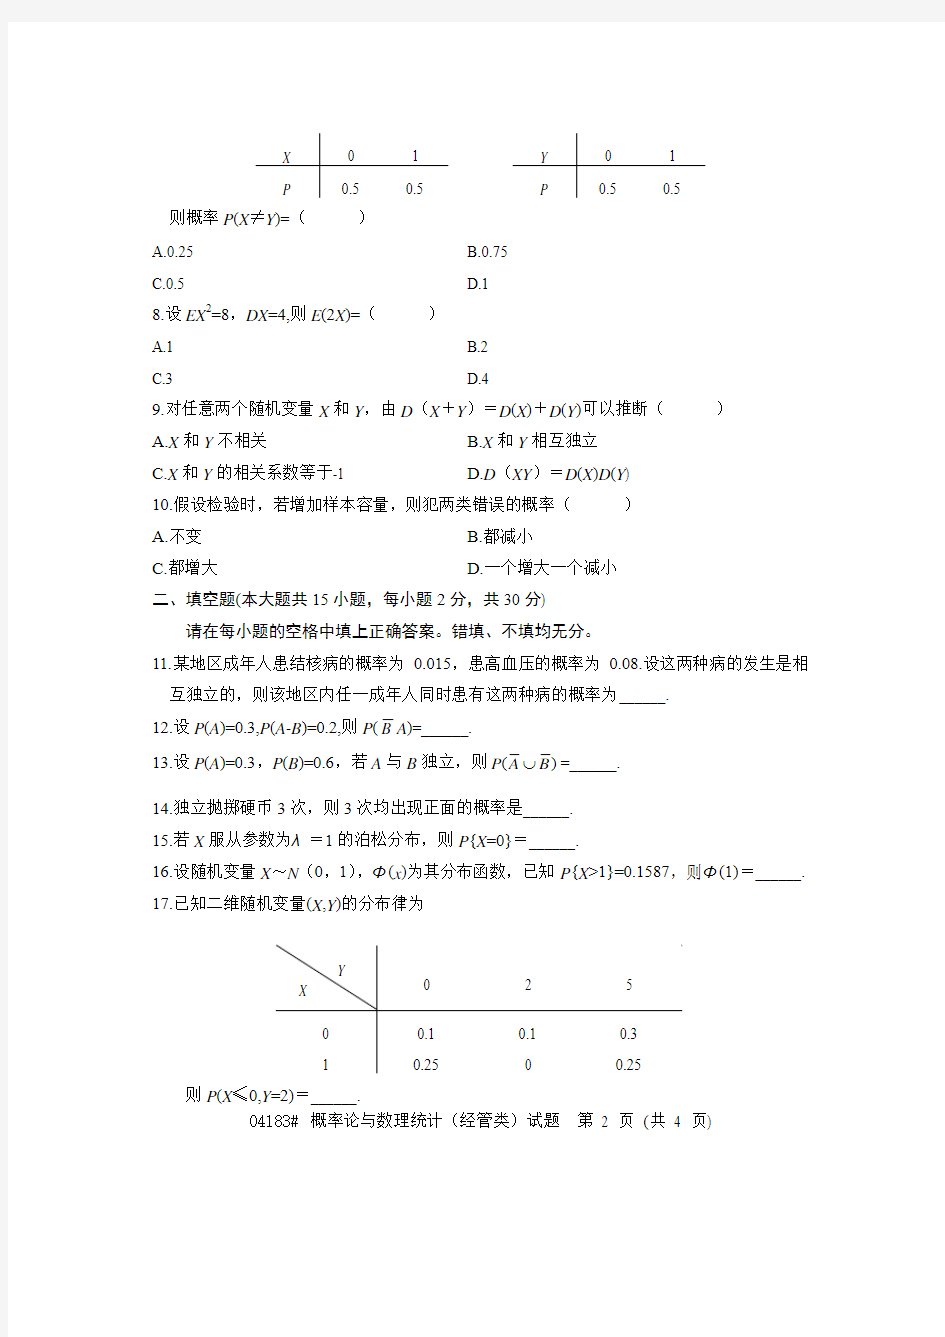 浙江省2011年1月高等教育自学考试 概率论与数理统计(经管类)试题 课程代码04183